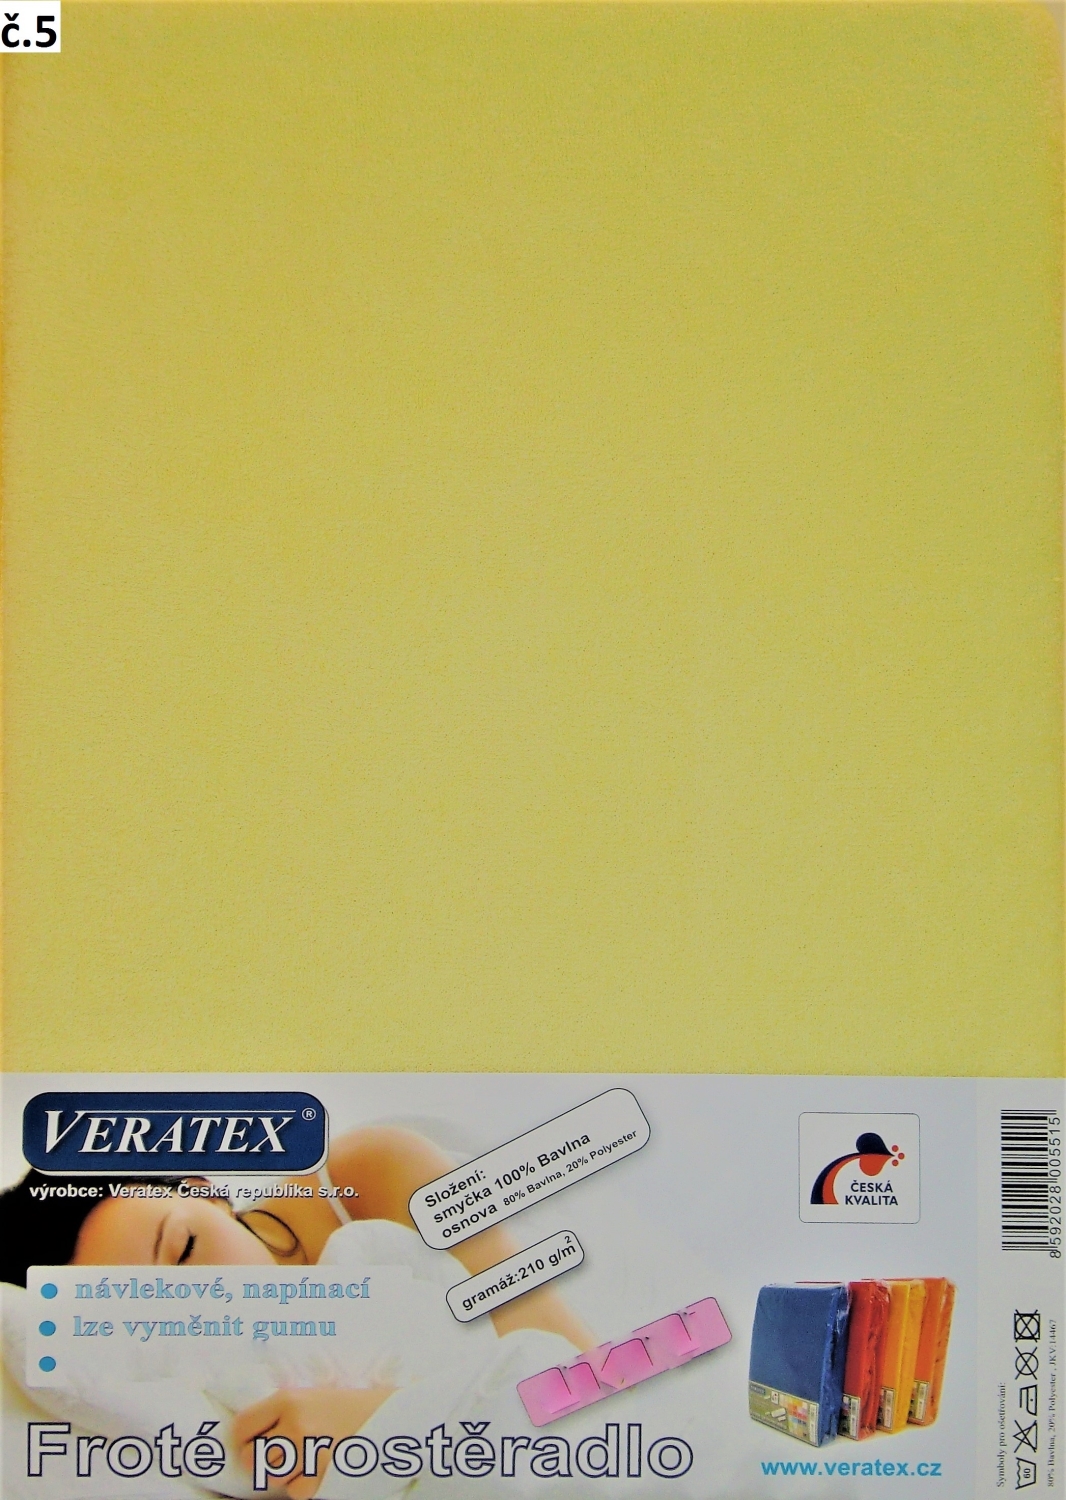 Veratex Froté prostěradlo jednolůžko 90 x 200x25cm (č. 5-sv.žluté)